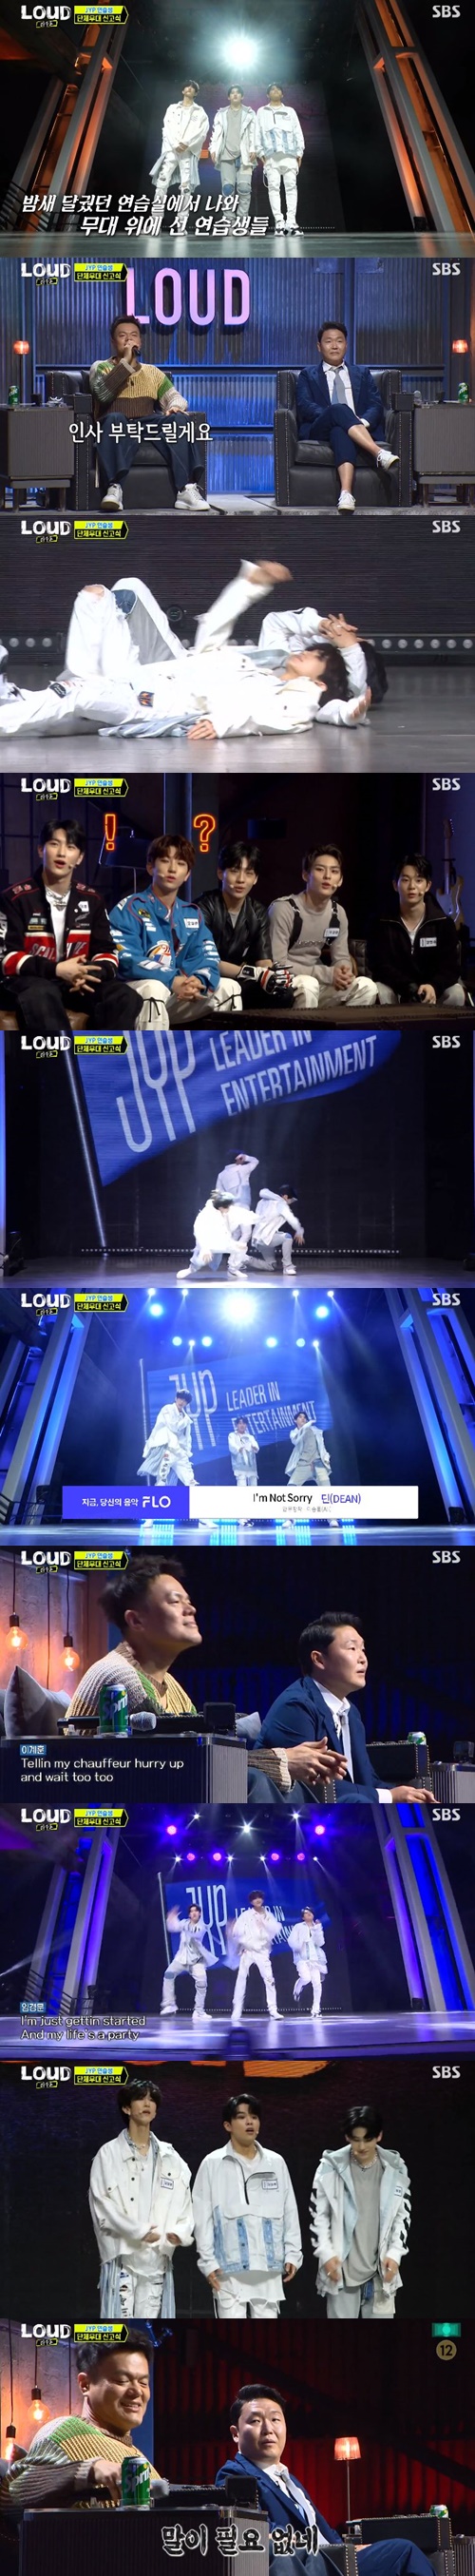 ‘라우드’ 싸이 JYP 연습생 사진=SBS 예능프로그램 ‘라우드(LOUD)’ 캡처